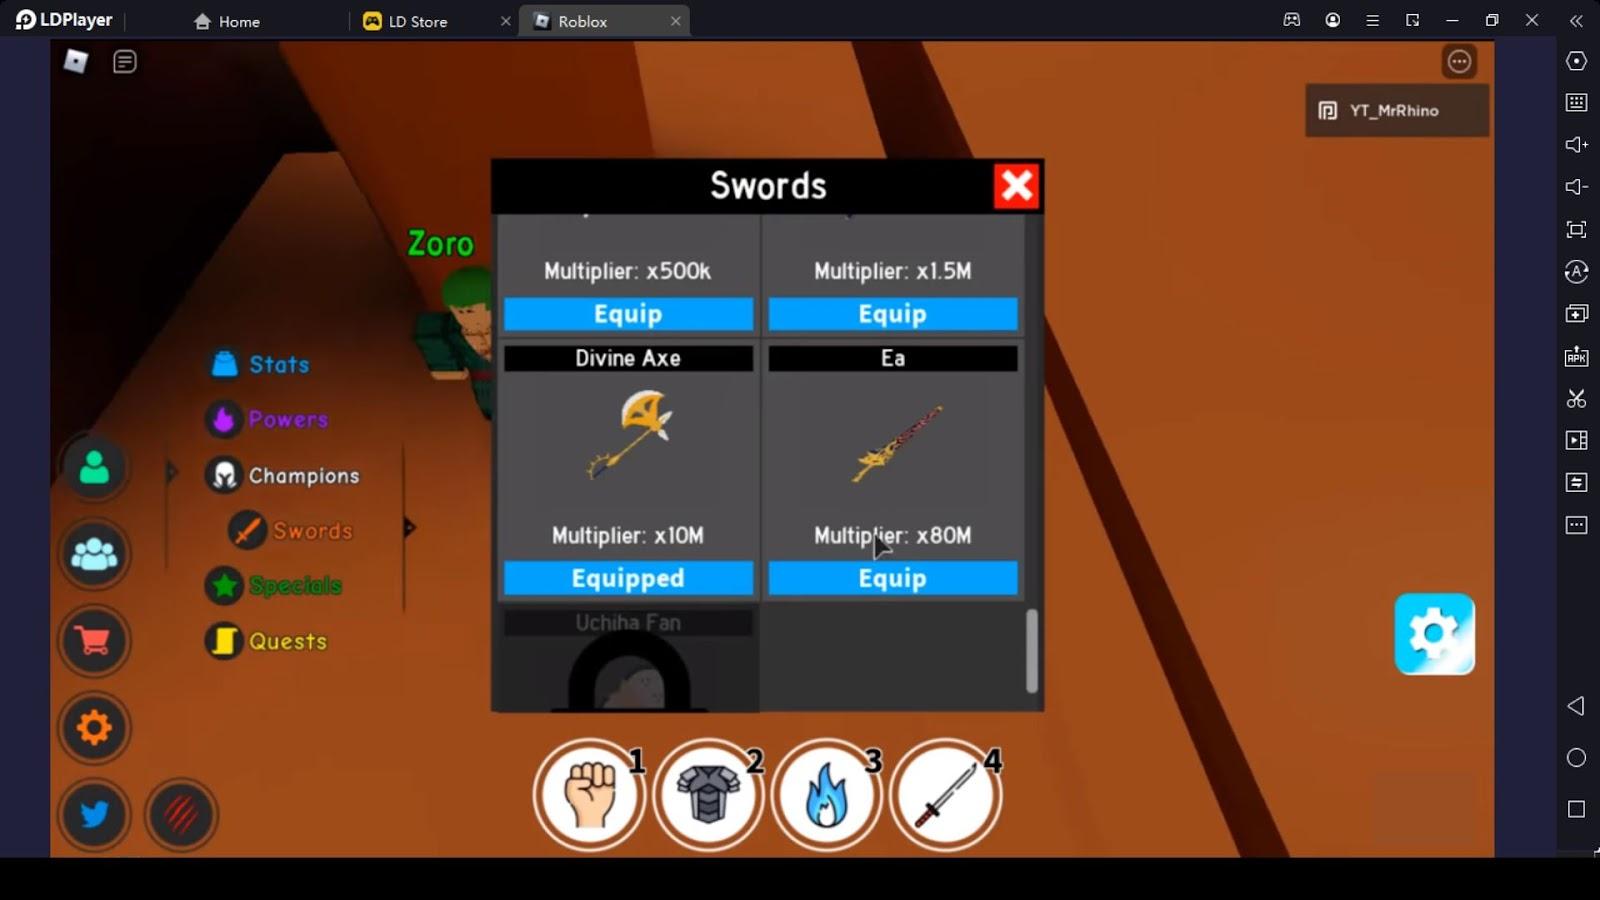 Unlock Swords with Higher Multipliers